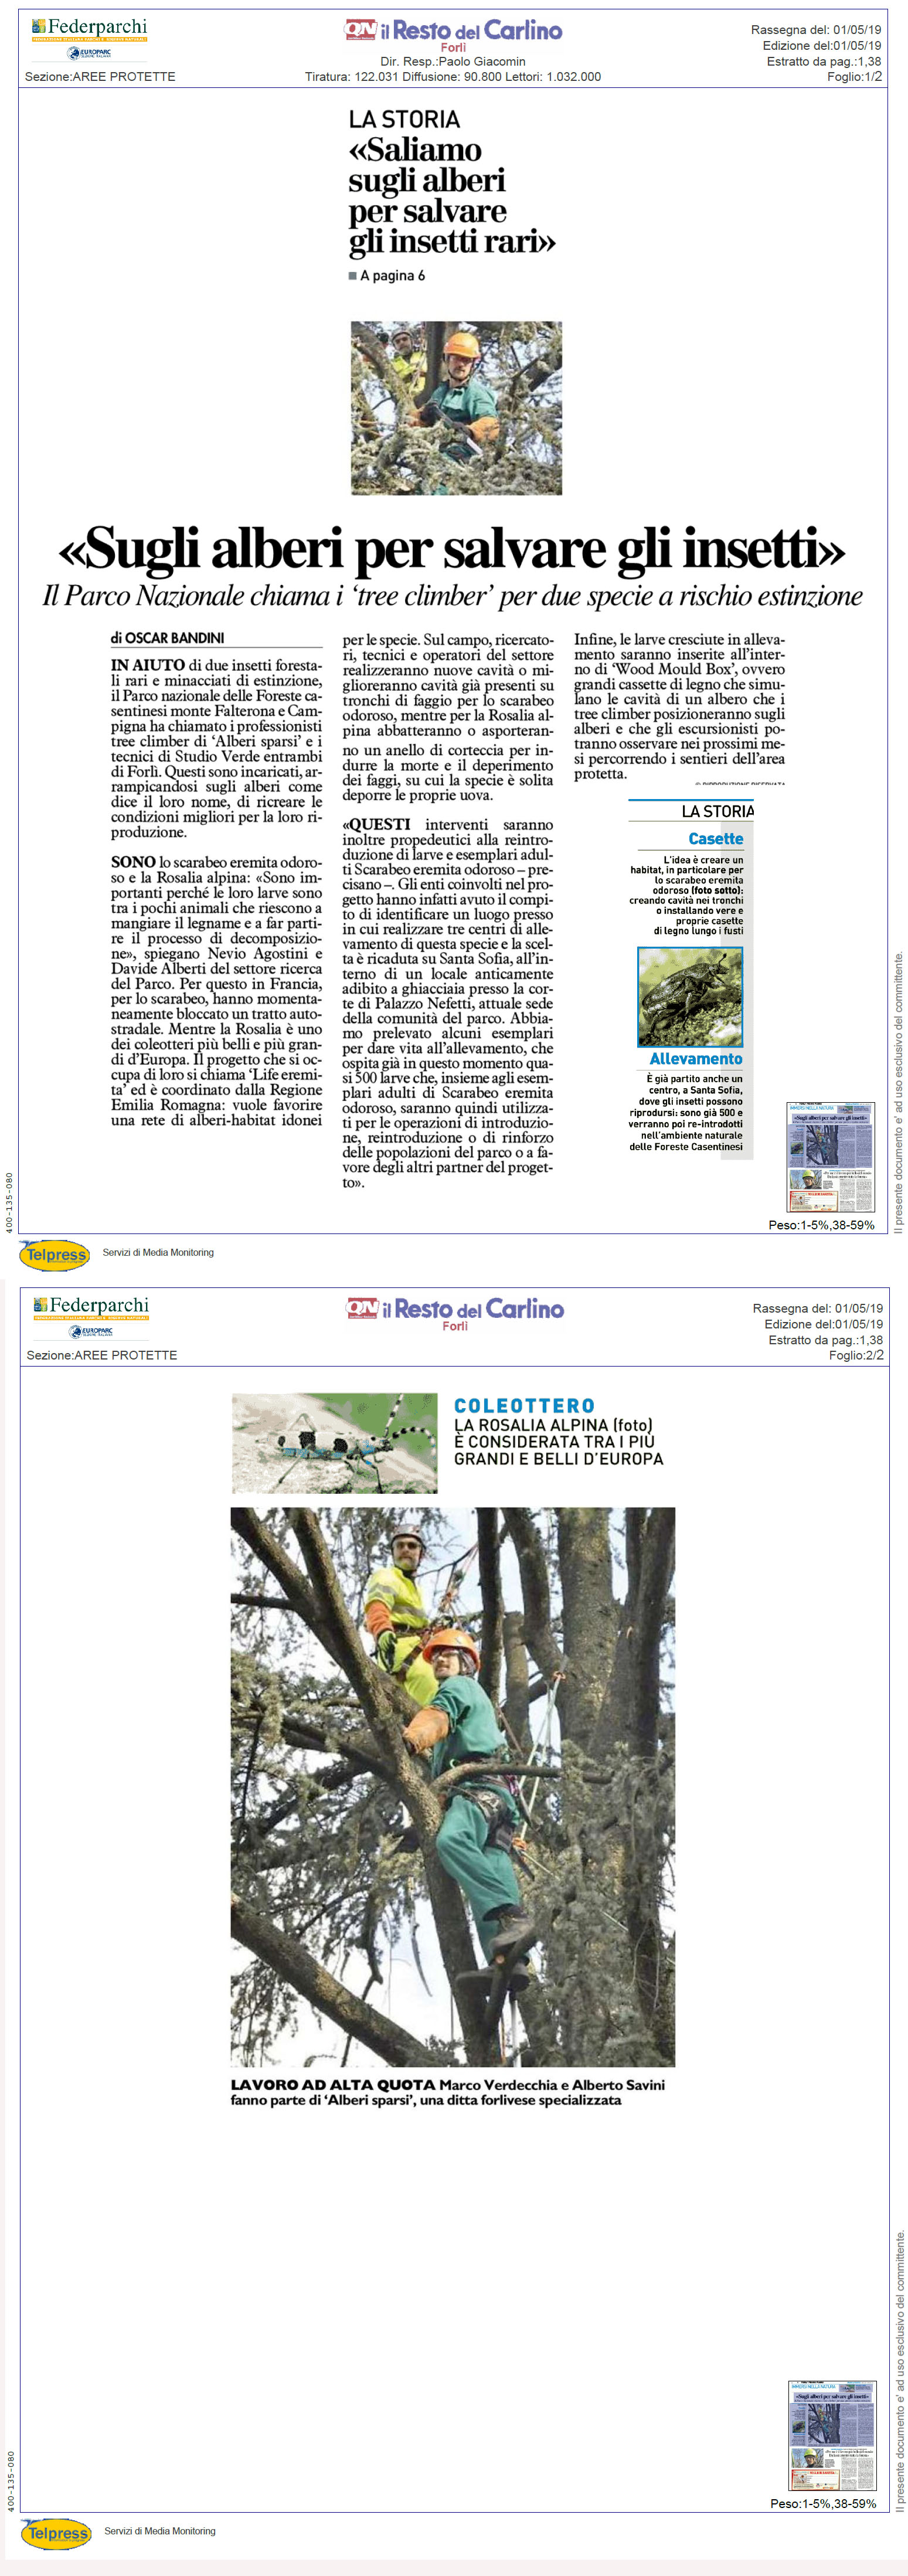 Sugli alberi per salvare gli insetti, Resto del Carlino, Forlì, 1 maggio.jpg